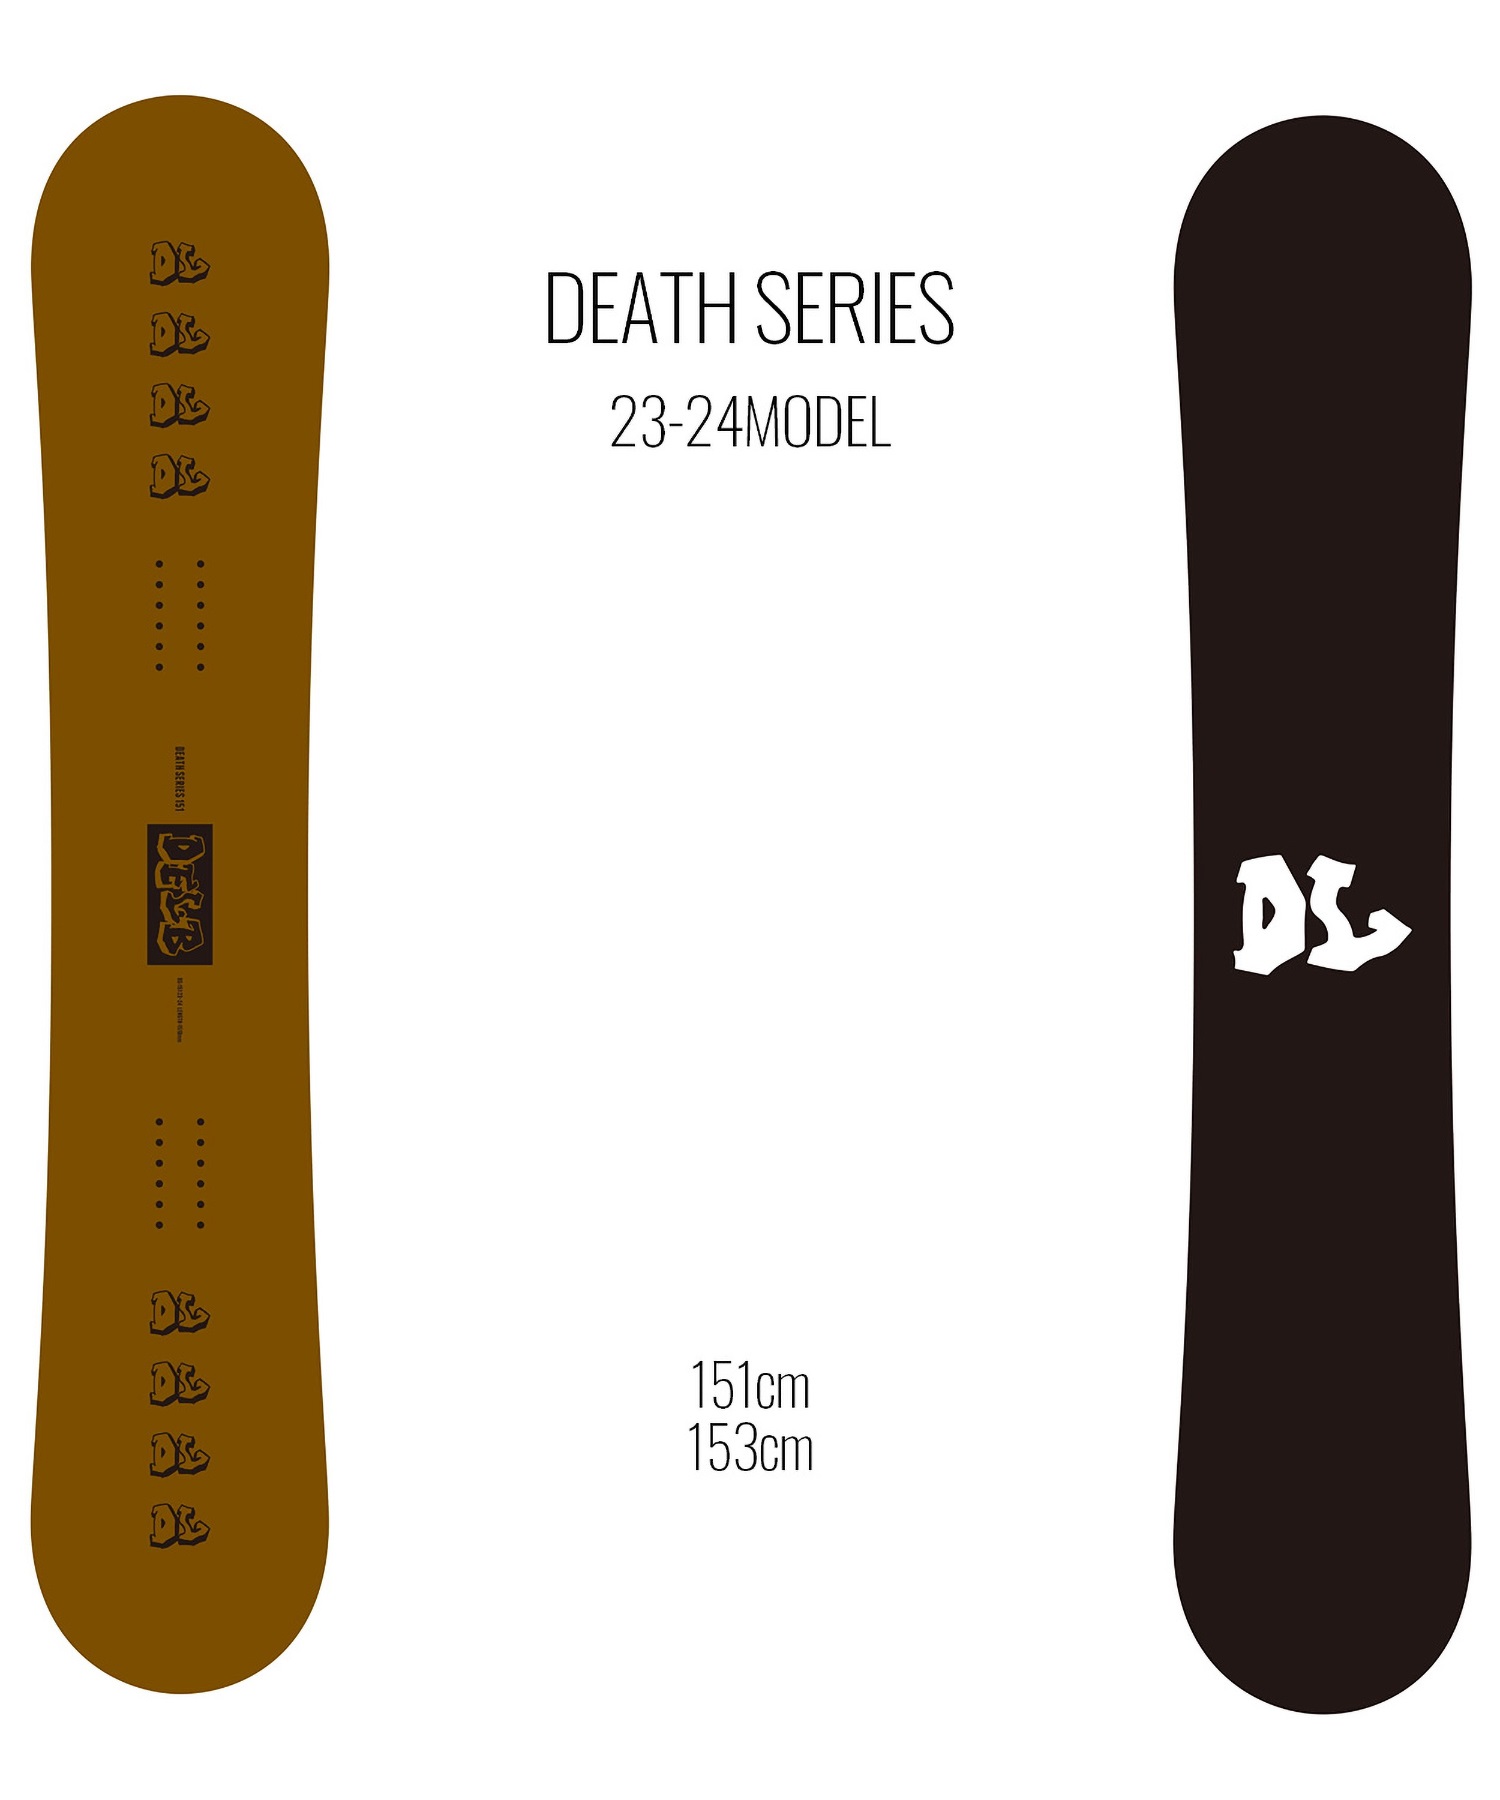 【早期購入/店頭受取対象外】スノーボード 板 メンズ DEATH LABEL デスレーベル DEATH SERIES 23-24モデル ムラサキスポーツ KK C2(DEATHSERIES-151cm)